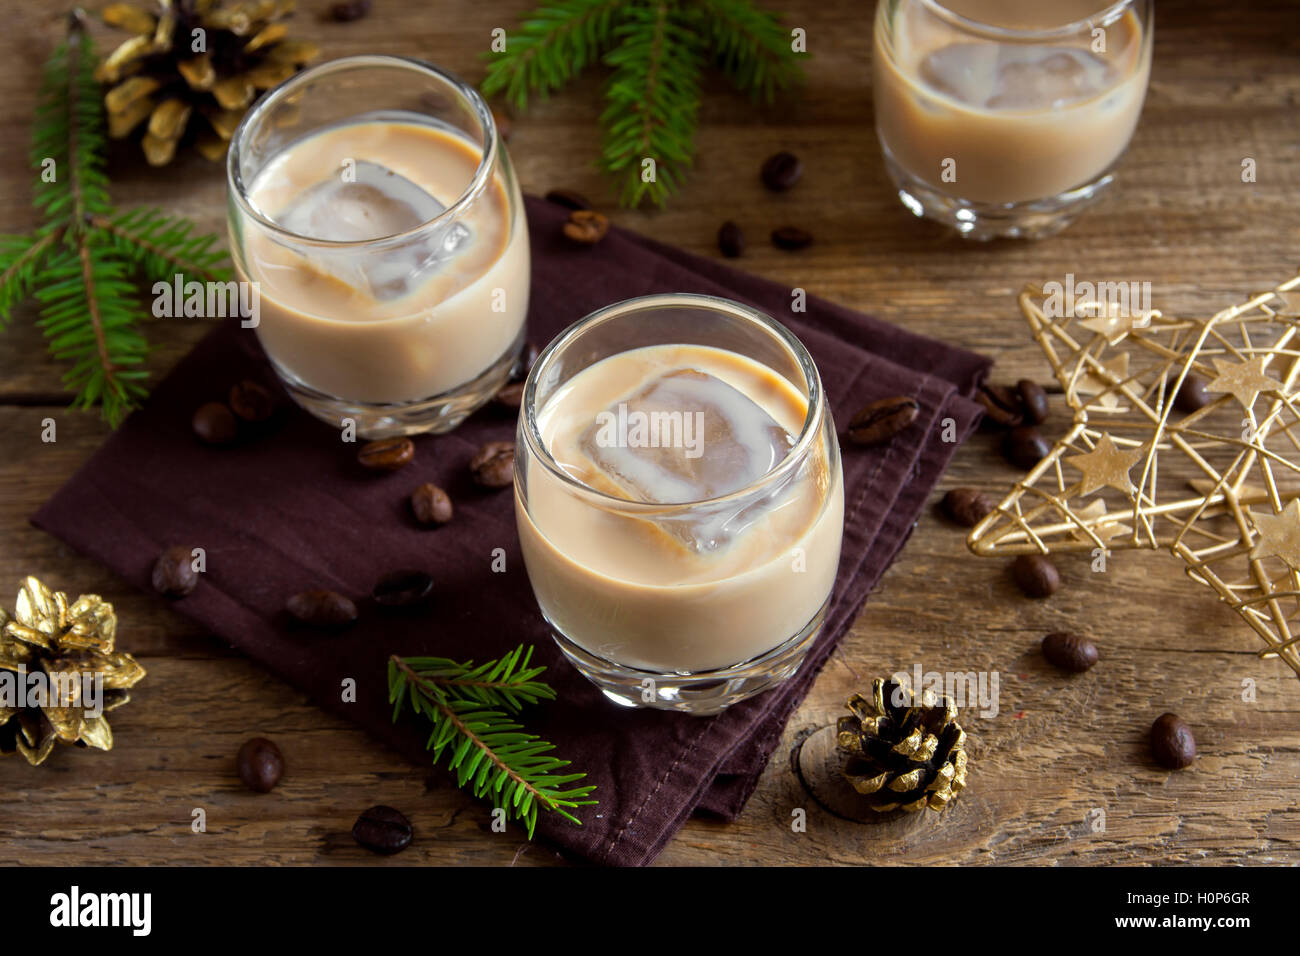 Crema de licor de café con hielo, decoración de Navidad y adornos en madera rústica - fondo festivo caseros Foto de stock